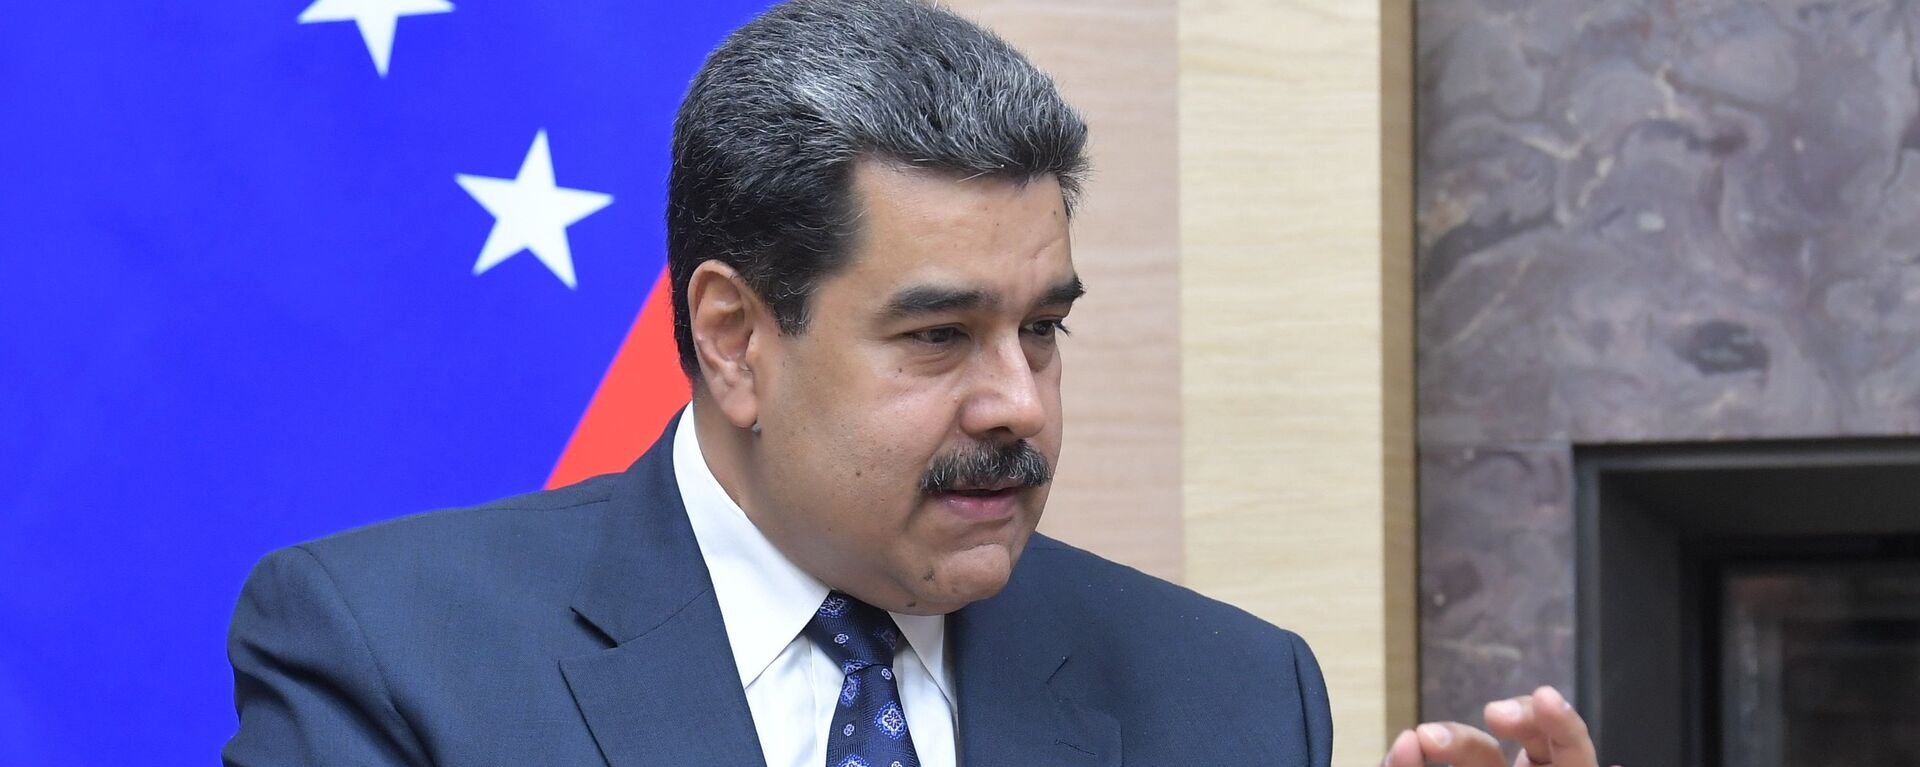 Nicolás Maduro, presidente de Venezuela - Sputnik Mundo, 1920, 25.08.2022